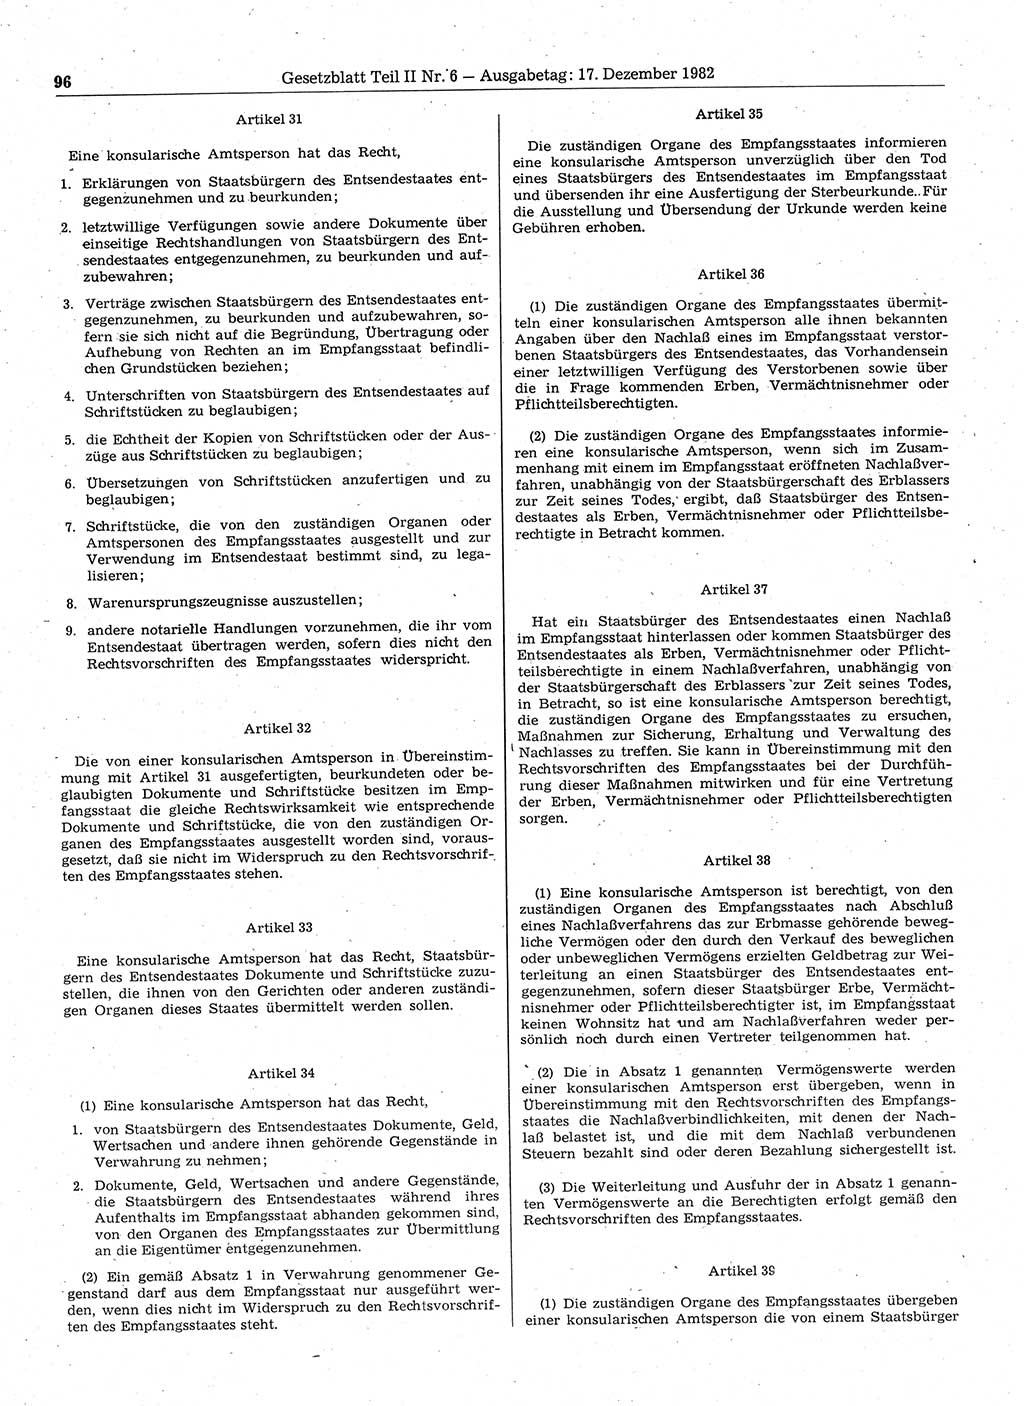 Gesetzblatt (GBl.) der Deutschen Demokratischen Republik (DDR) Teil ⅠⅠ 1982, Seite 96 (GBl. DDR ⅠⅠ 1982, S. 96)